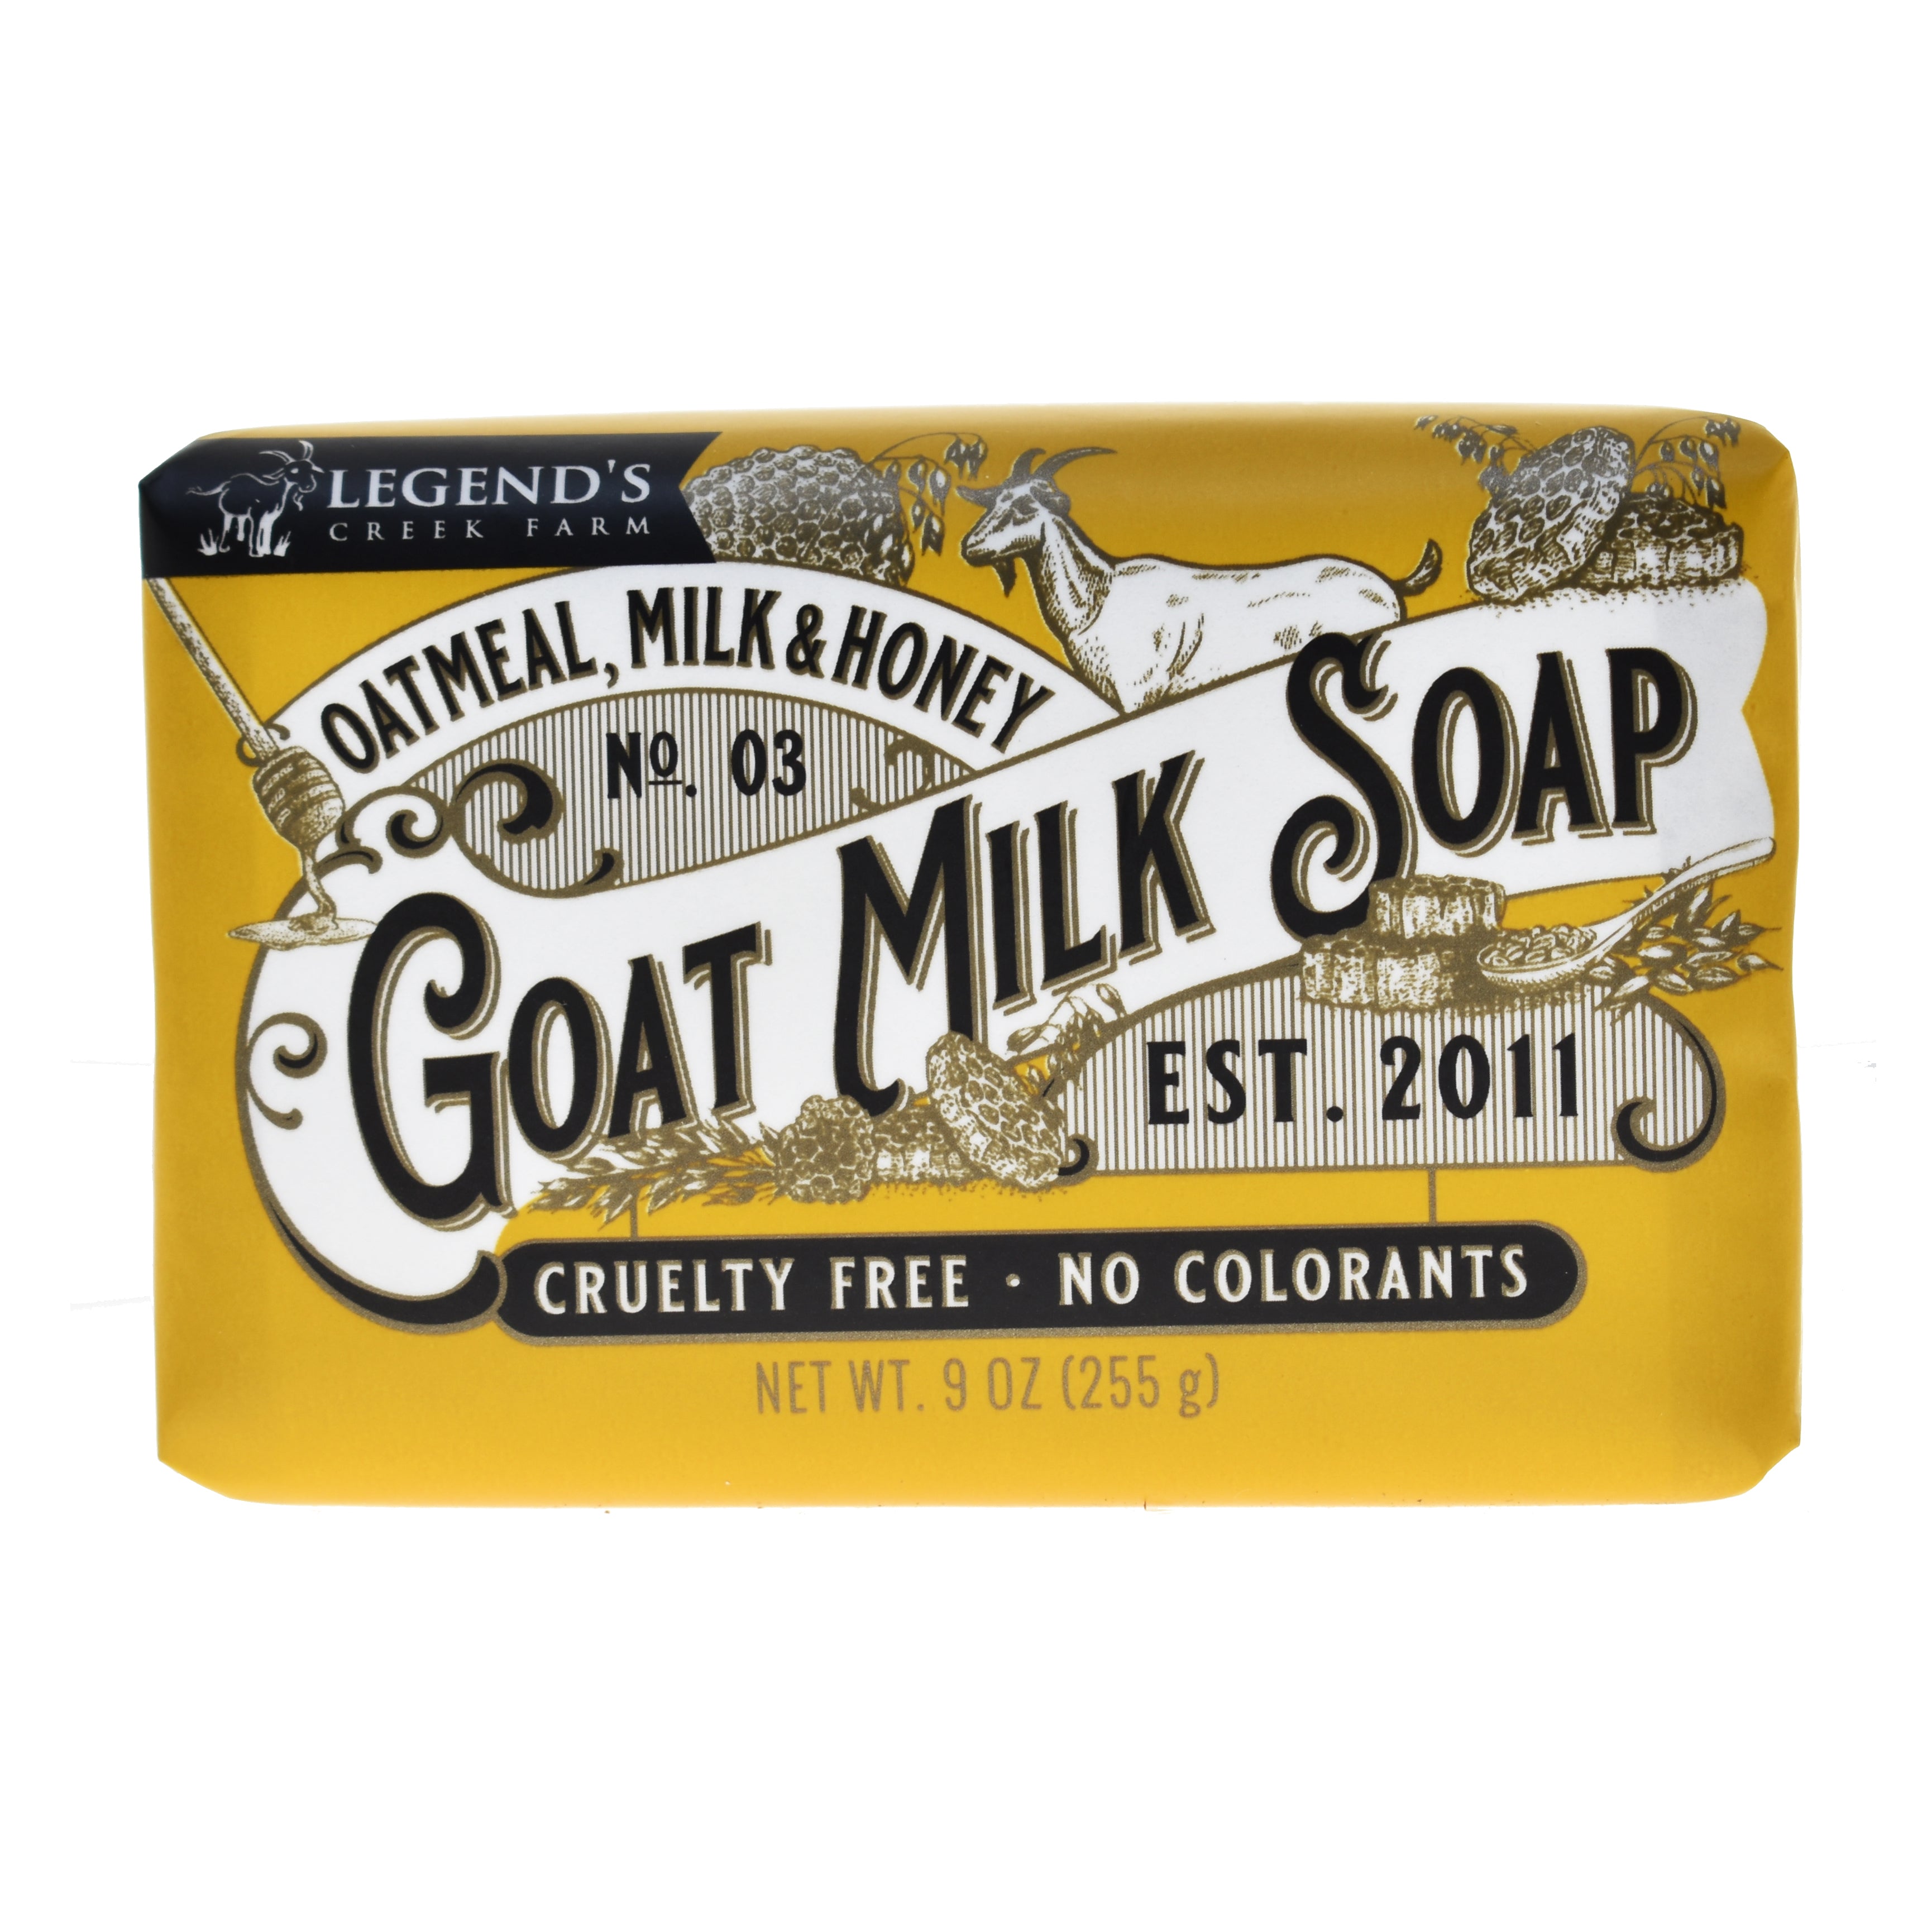 Joy Lane Farm - Oatmeal, Milk & Honey Goat Milk Soap - 4.3 oz.